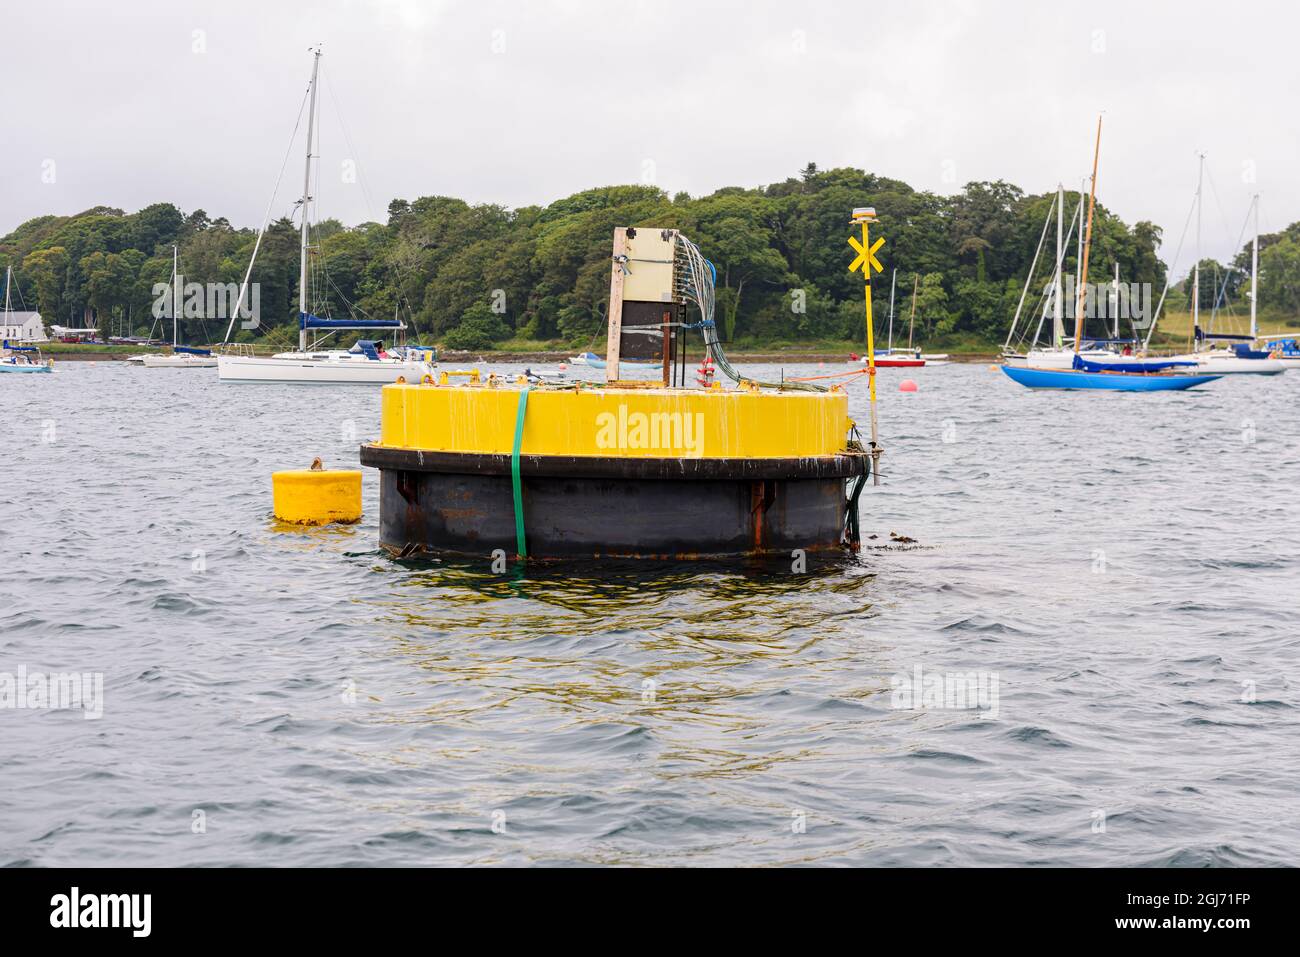 Generatore sperimentale di energia elettrica di marea che utilizza un 'aquilone' subacqueo per sfruttare le forti correnti che passano con le maree. Strangford Lough. Foto Stock